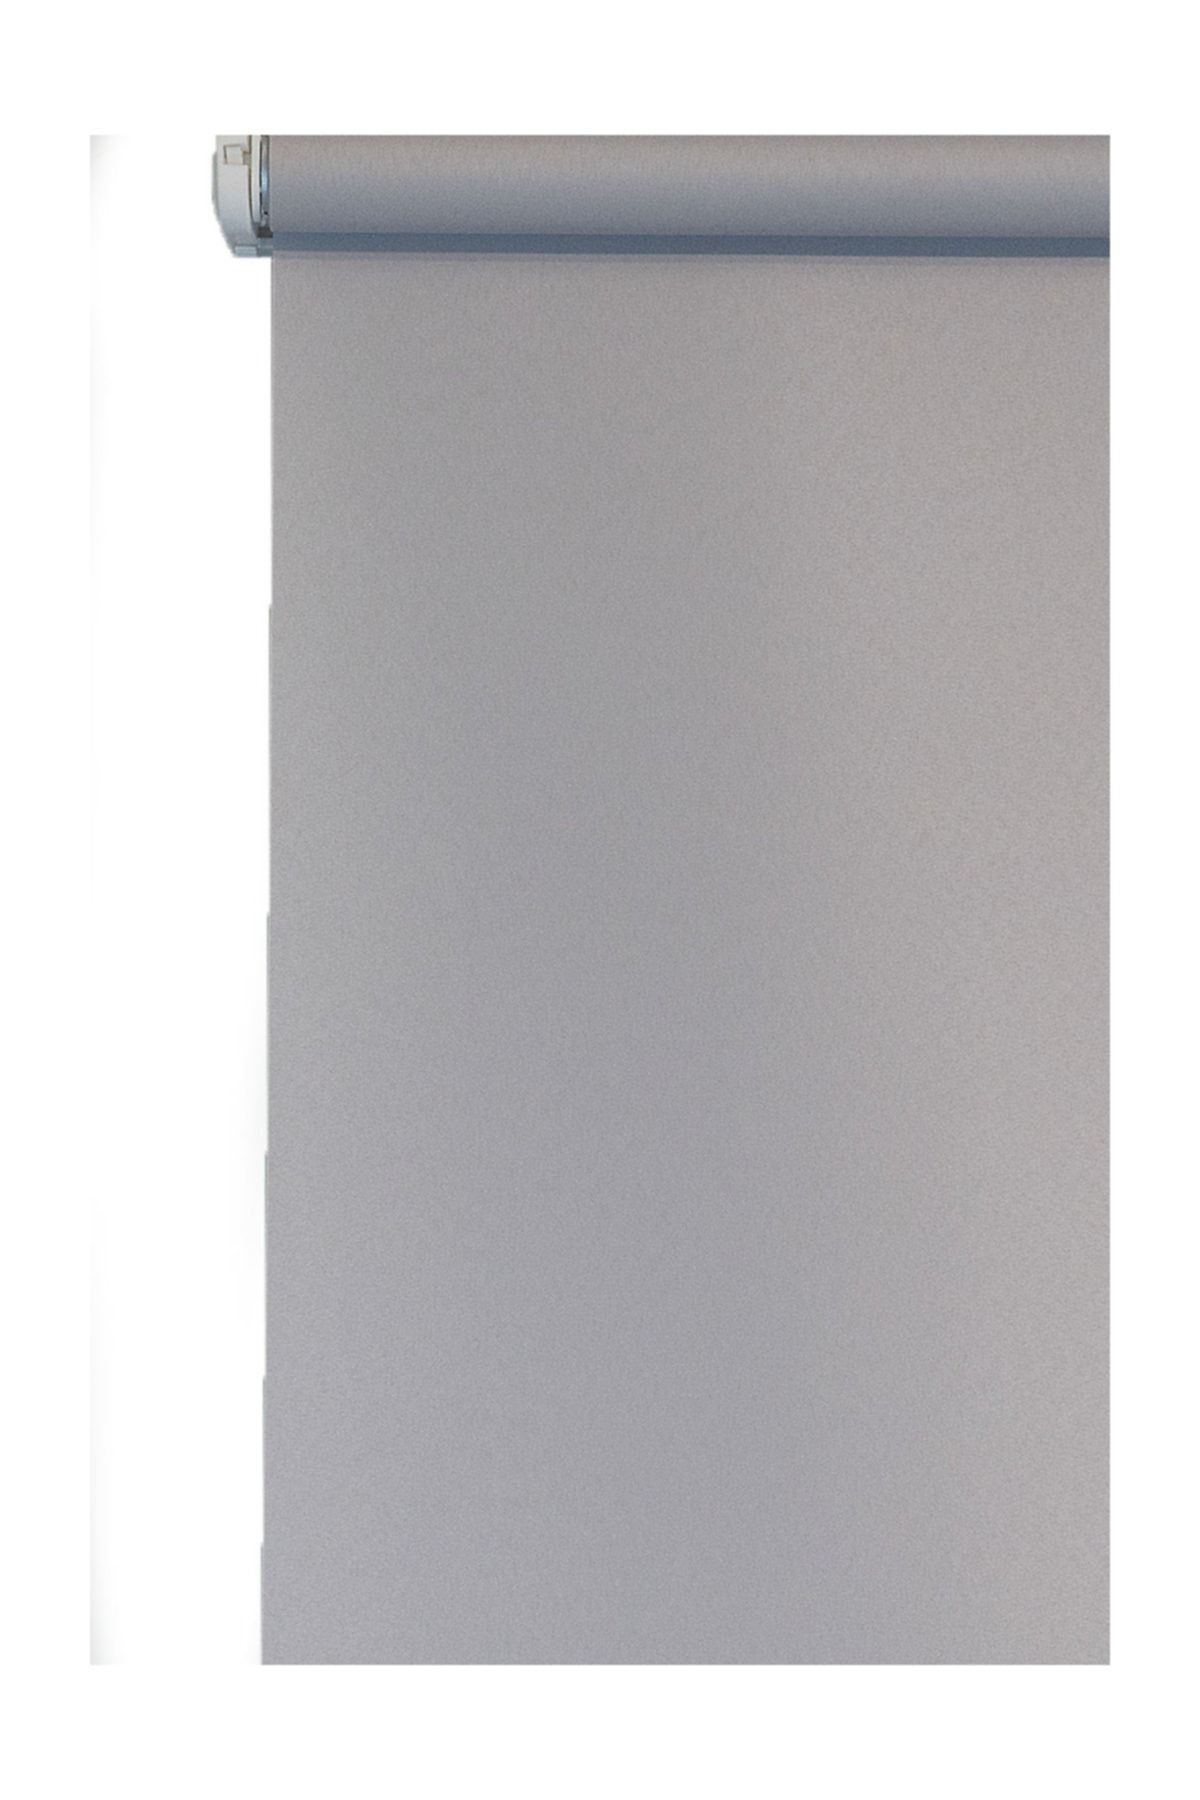 Efor Polyester Serisi Koyu Gri 150x200 cm